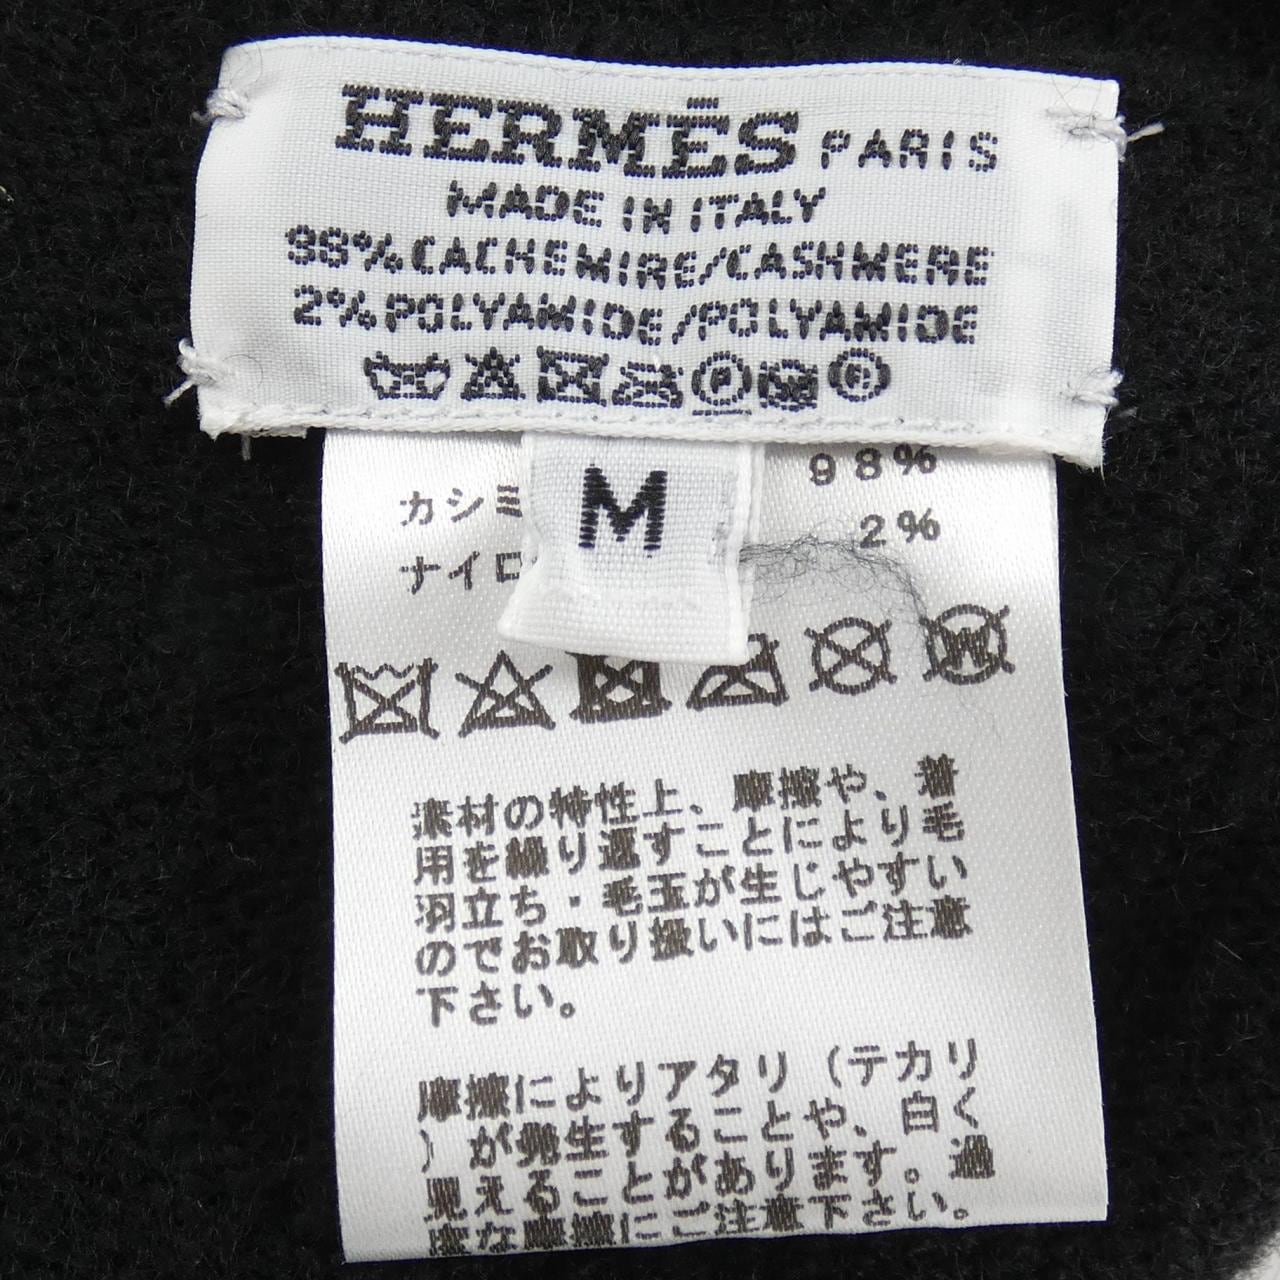 HERMES HERMES Hat